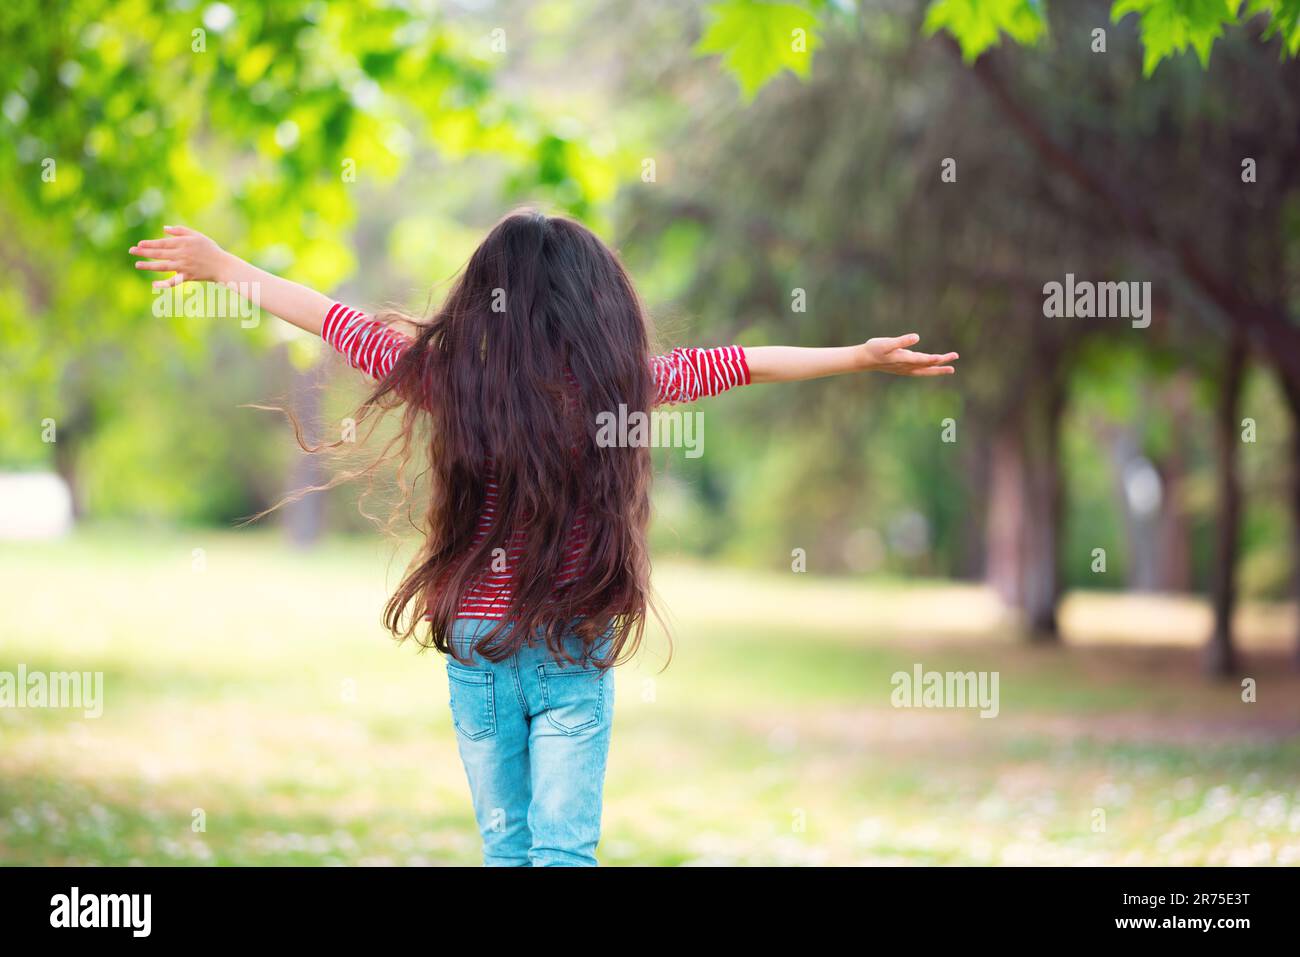 Glückliches kleines Mädchen, das draußen auf einem grünen Feld rennt, Abenteuer in einem Park, glückliche, langsam lebende Kindheit und Sommerurlaub Stockfoto